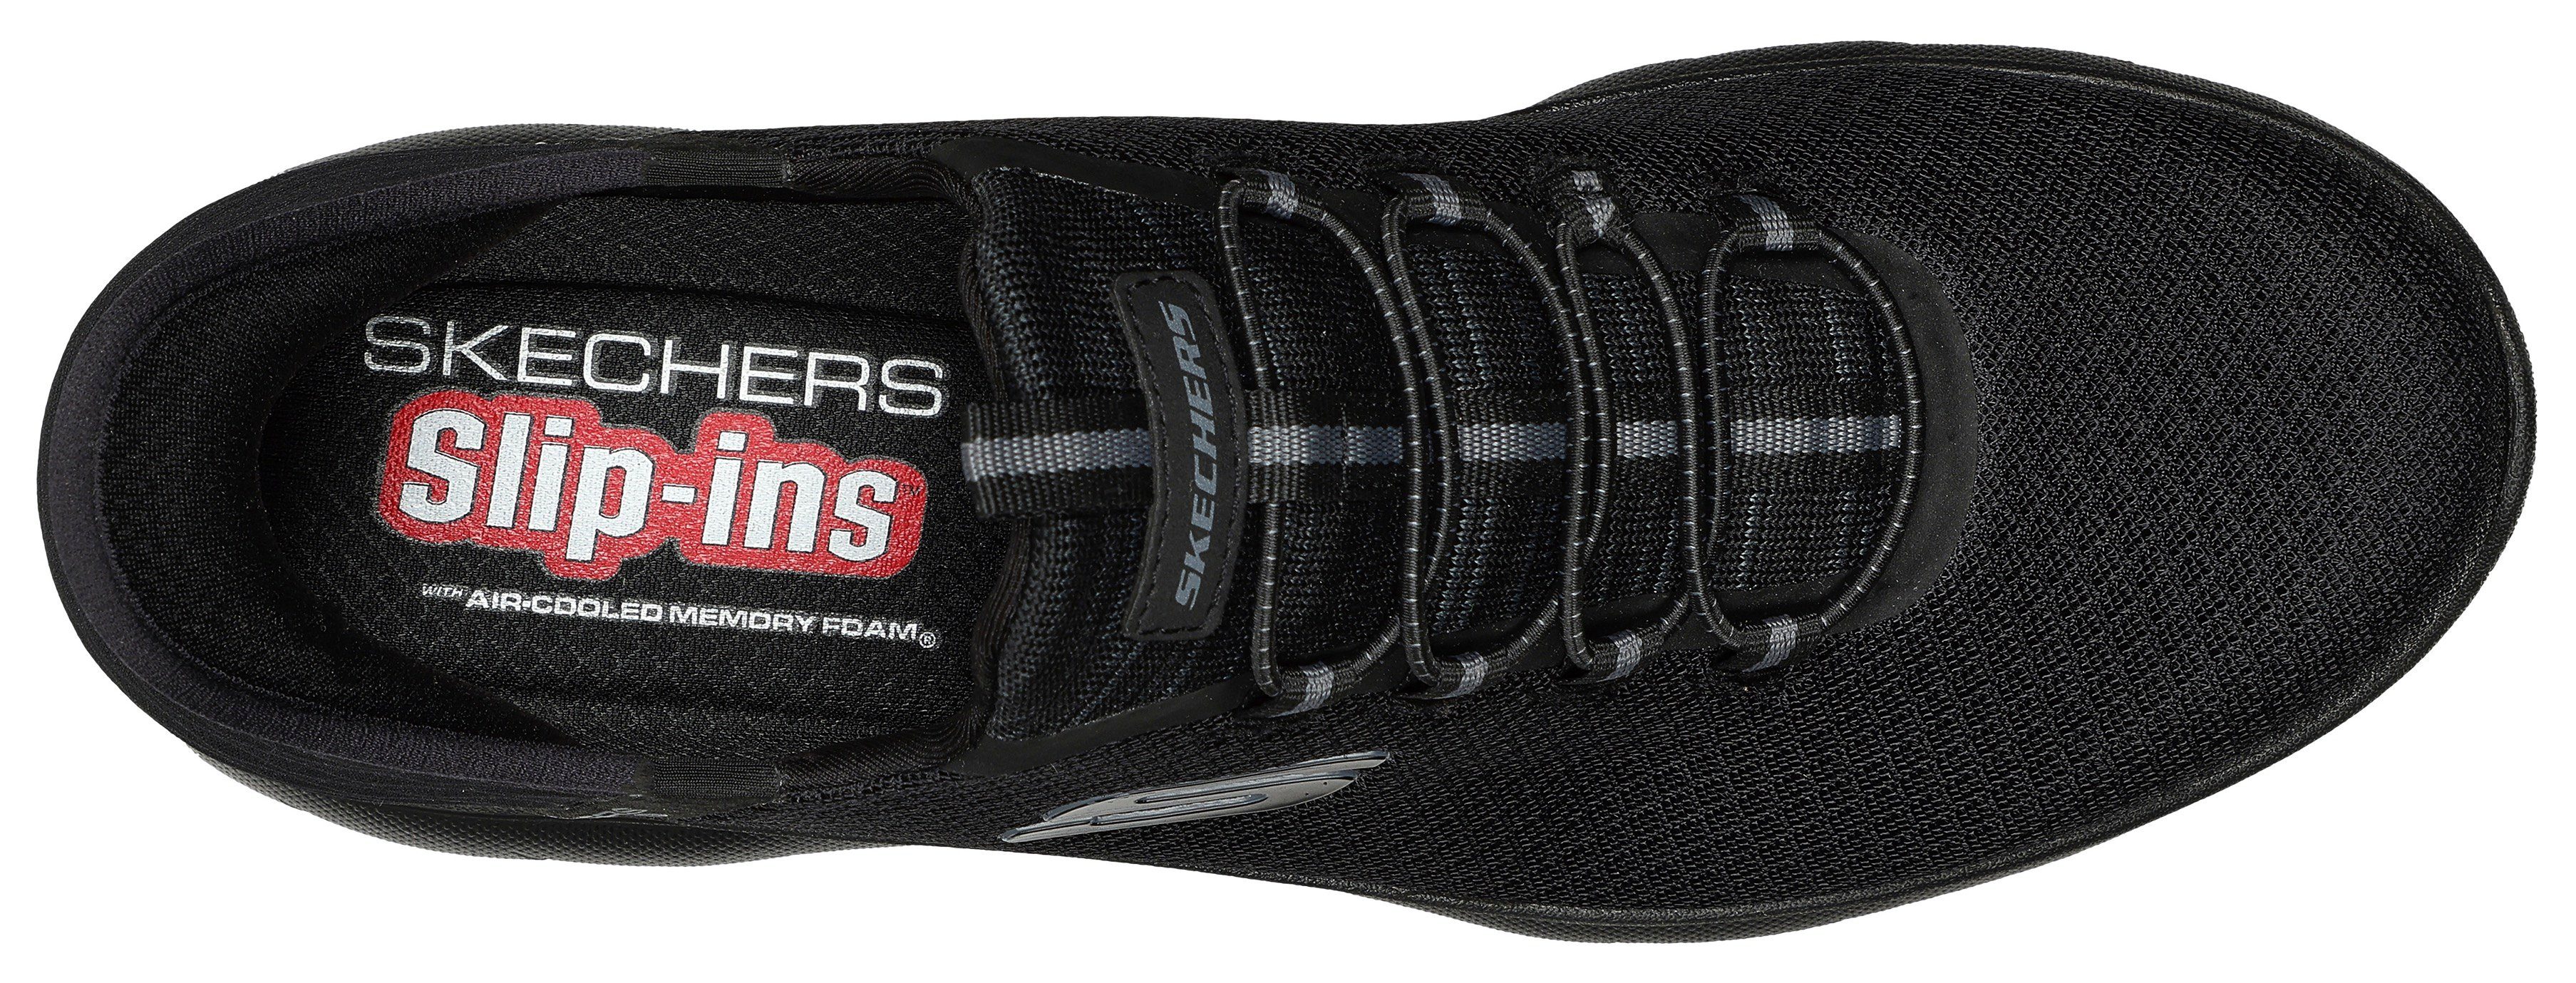 Skechers SUMMITS-HIGH RANGE Slip-On in Verarbeitung Sneaker veganer black/black